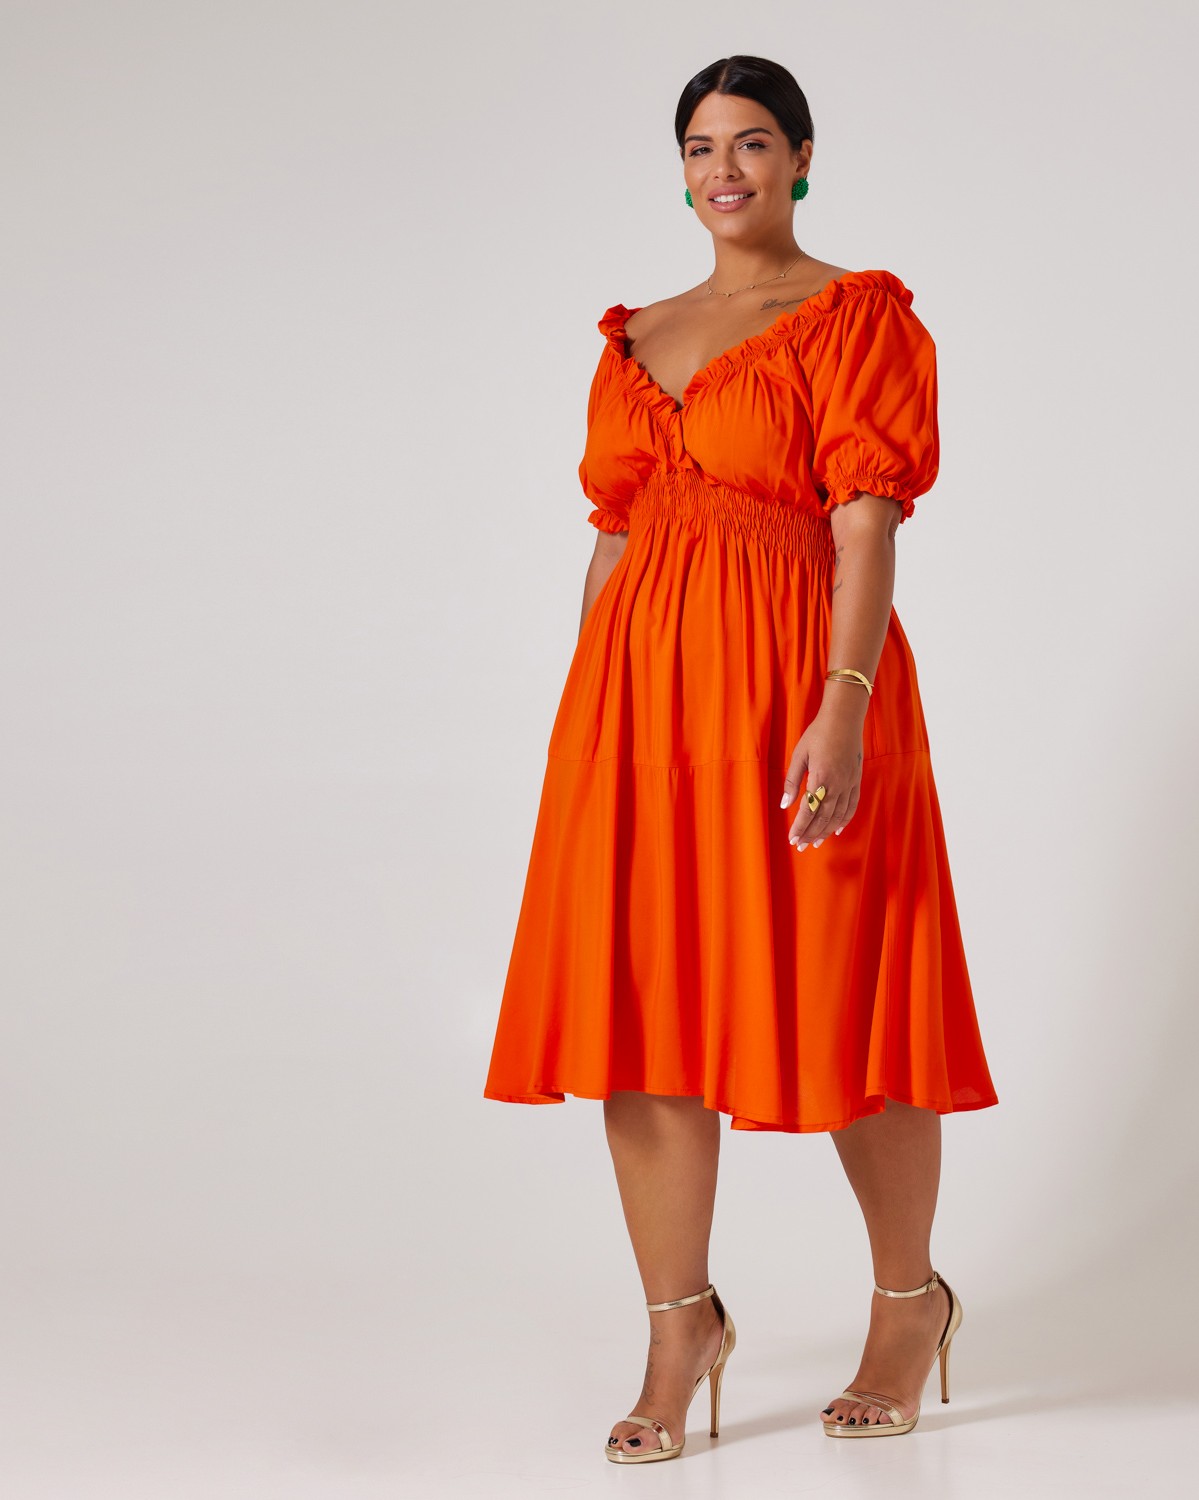 Φόρεμα Κάτω Από Το Γόνατο Με Σφηκοφωλιά Στη Μέση Πορτοκαλί